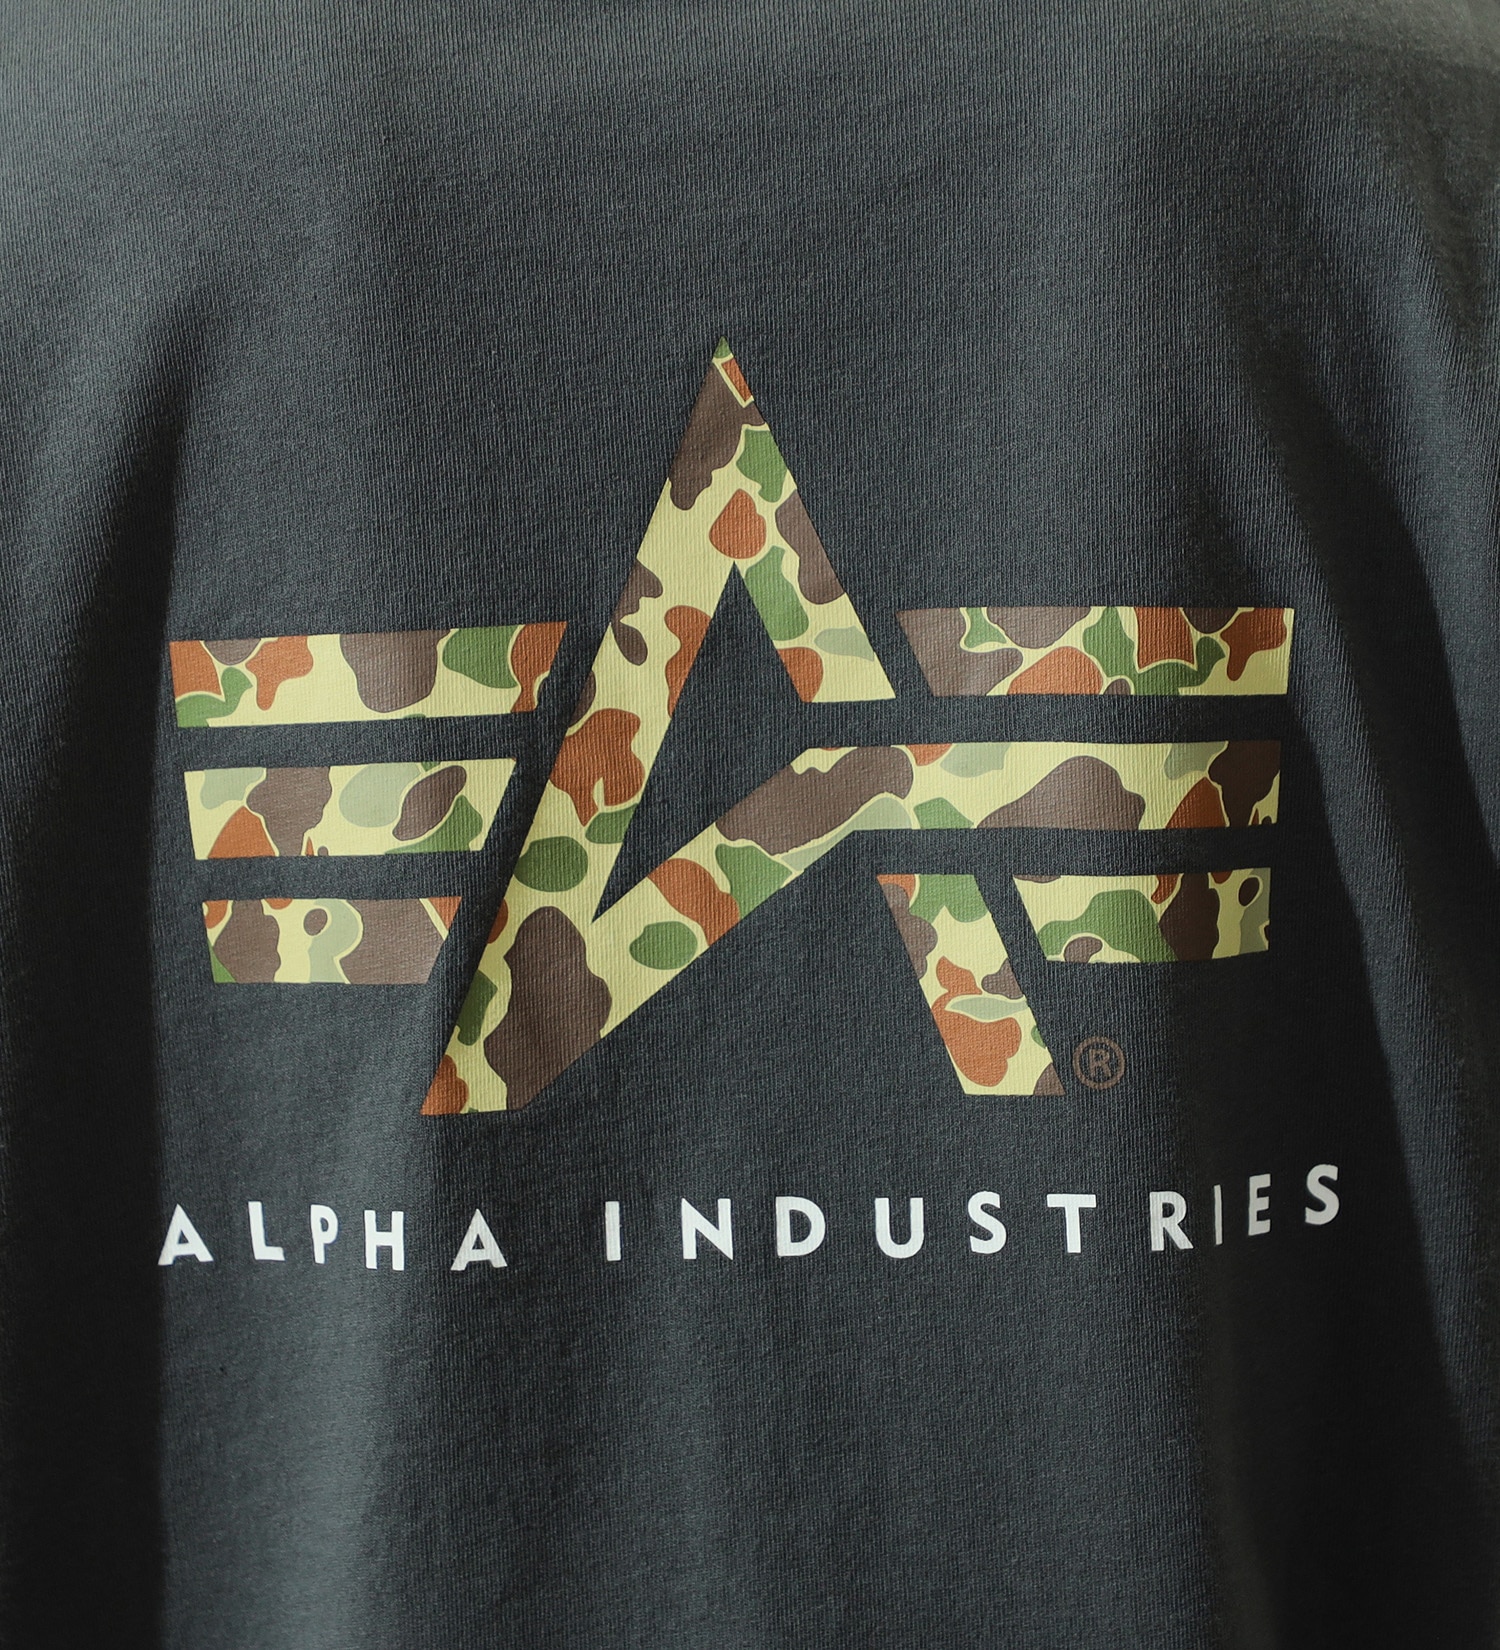 ALPHA(アルファ)のユーティリティーポケットTシャツ (カモ) 半袖|トップス/Tシャツ/カットソー/メンズ|グレー